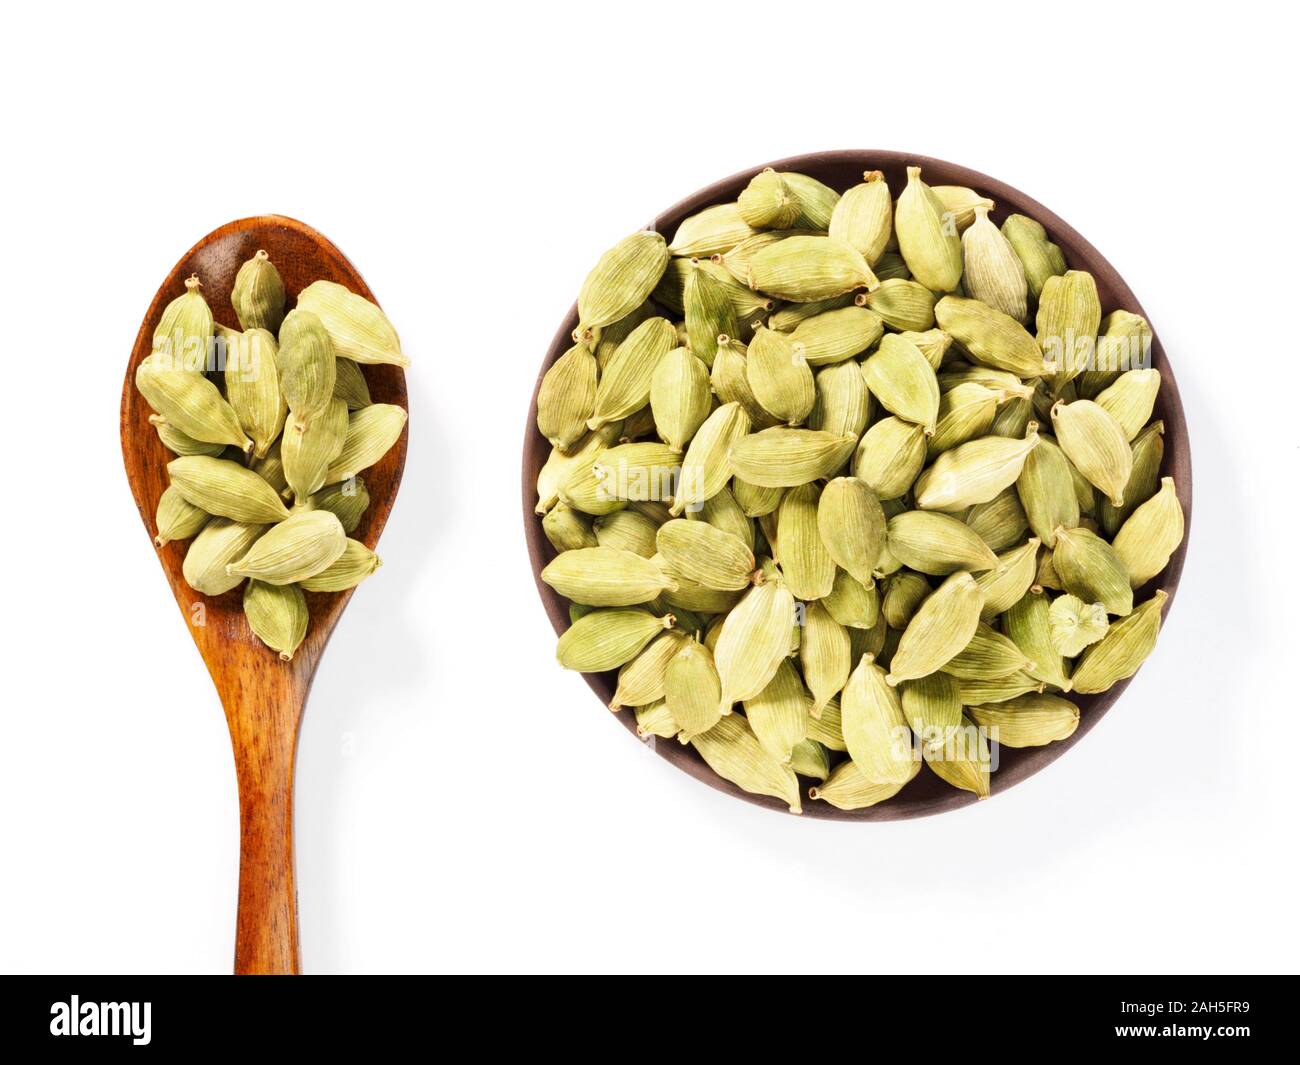 Gewürz Grüner Kardamom (Elettaria cardamomum) macht Essen schmackhafter und gesünder. Indische kulinarische Zutat. Auf weissem Hintergrund isolieren Stockfoto